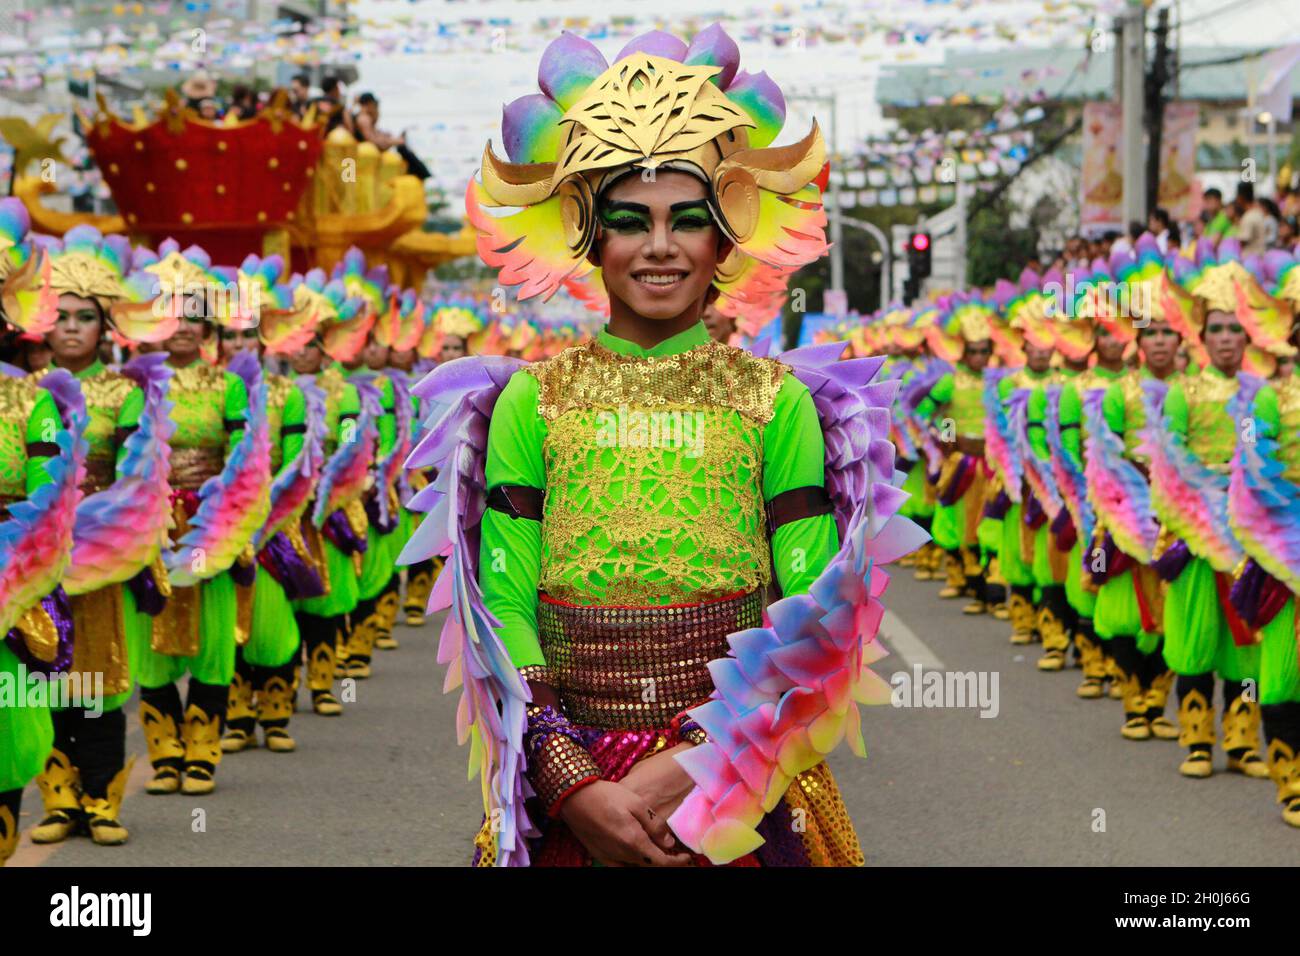 Menschen in bunten Kostümen während des Sinulog Festivals in der Provinz Cebu. Sinulog Festival wird jährlich zur gleichen Zeit wie ATI-Atihan gefeiert, beide Feste sind zu Ehren des Kindes Jesus. Philippinen. Stockfoto